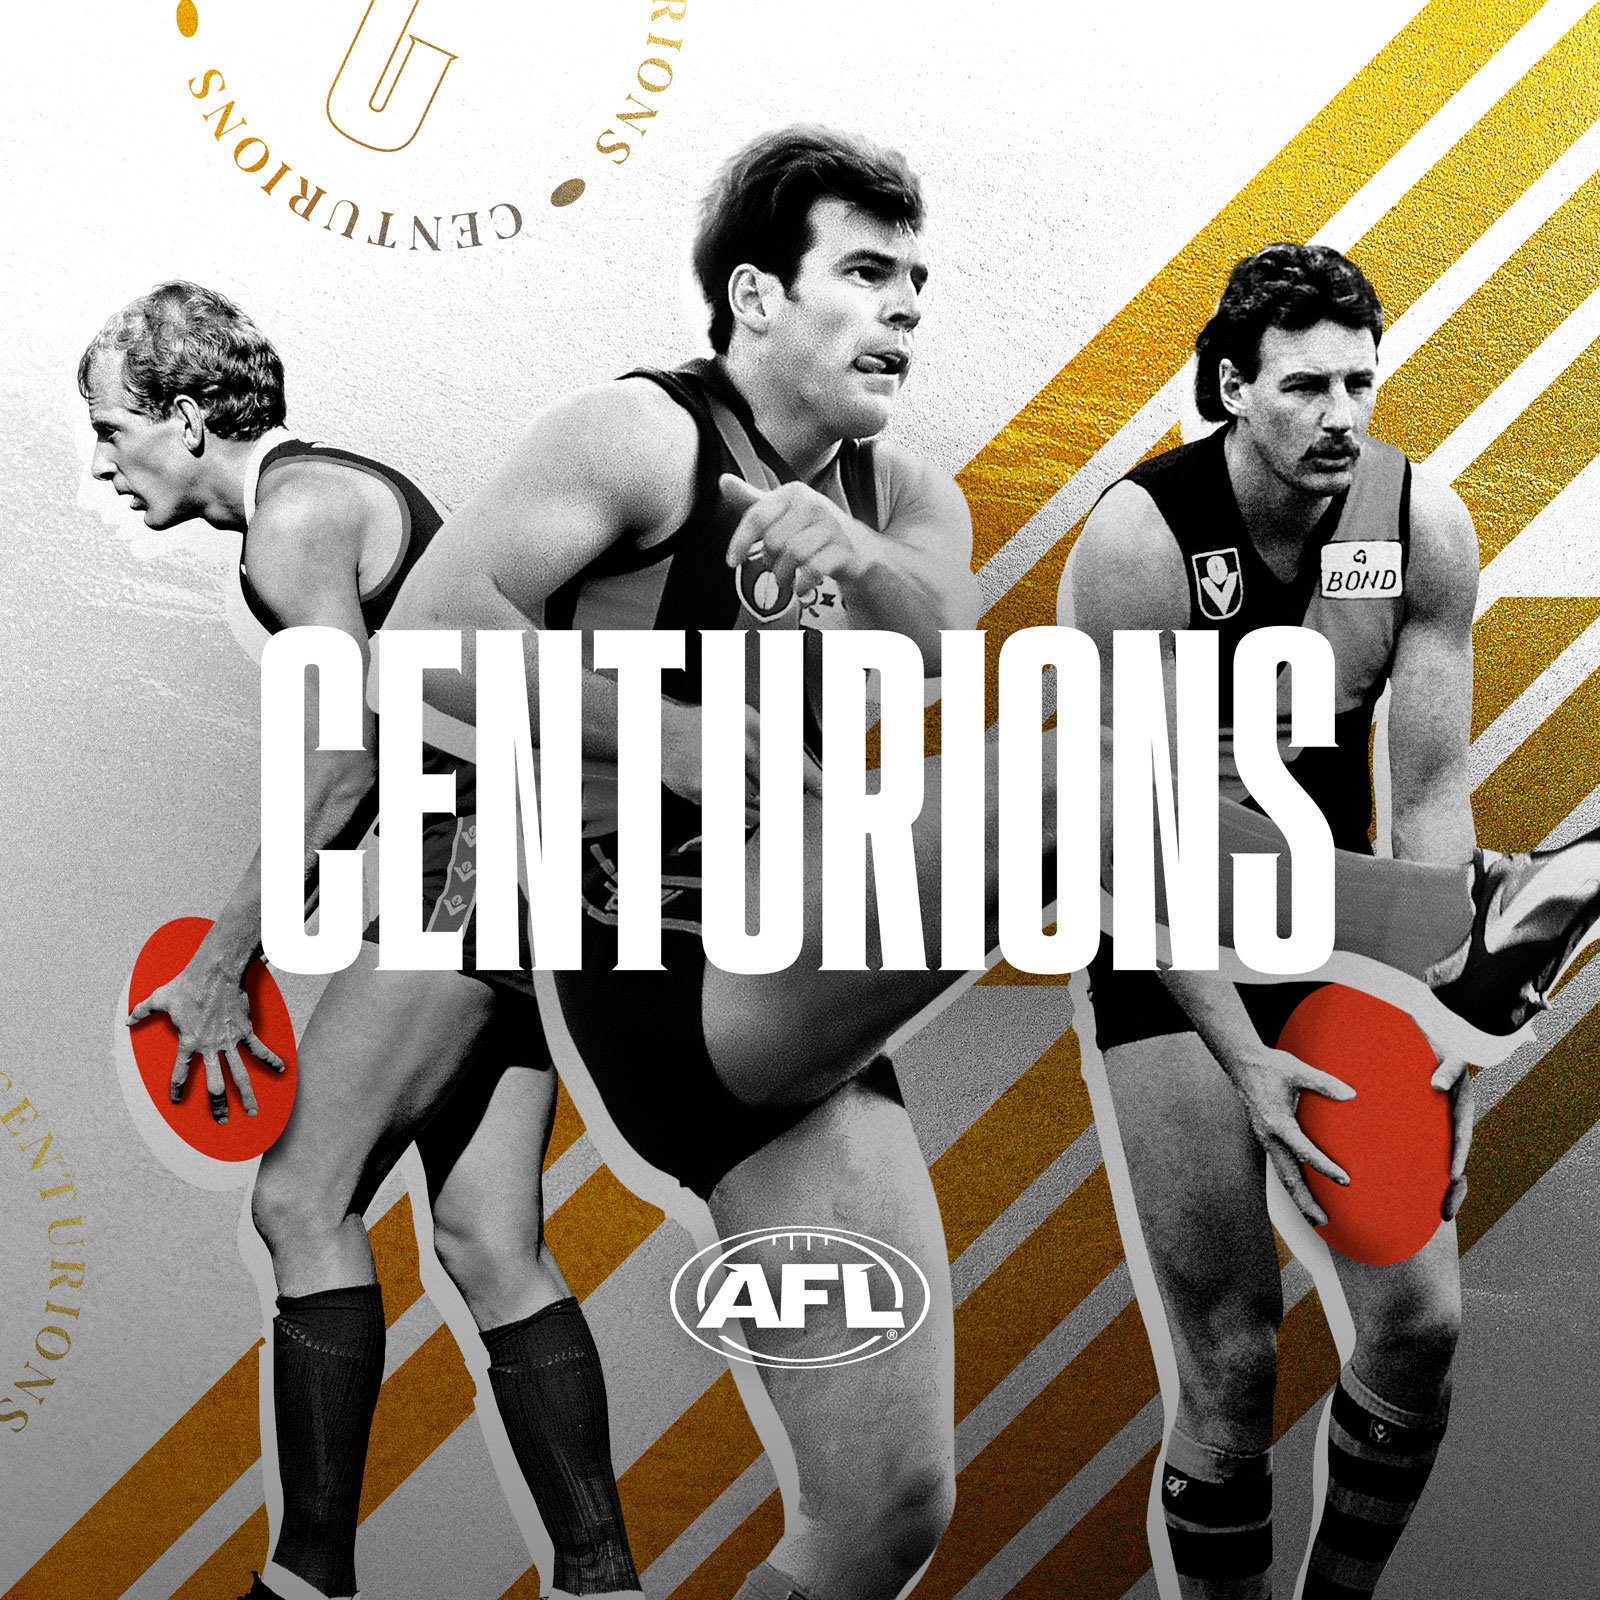 Centurions - Peter Hudson